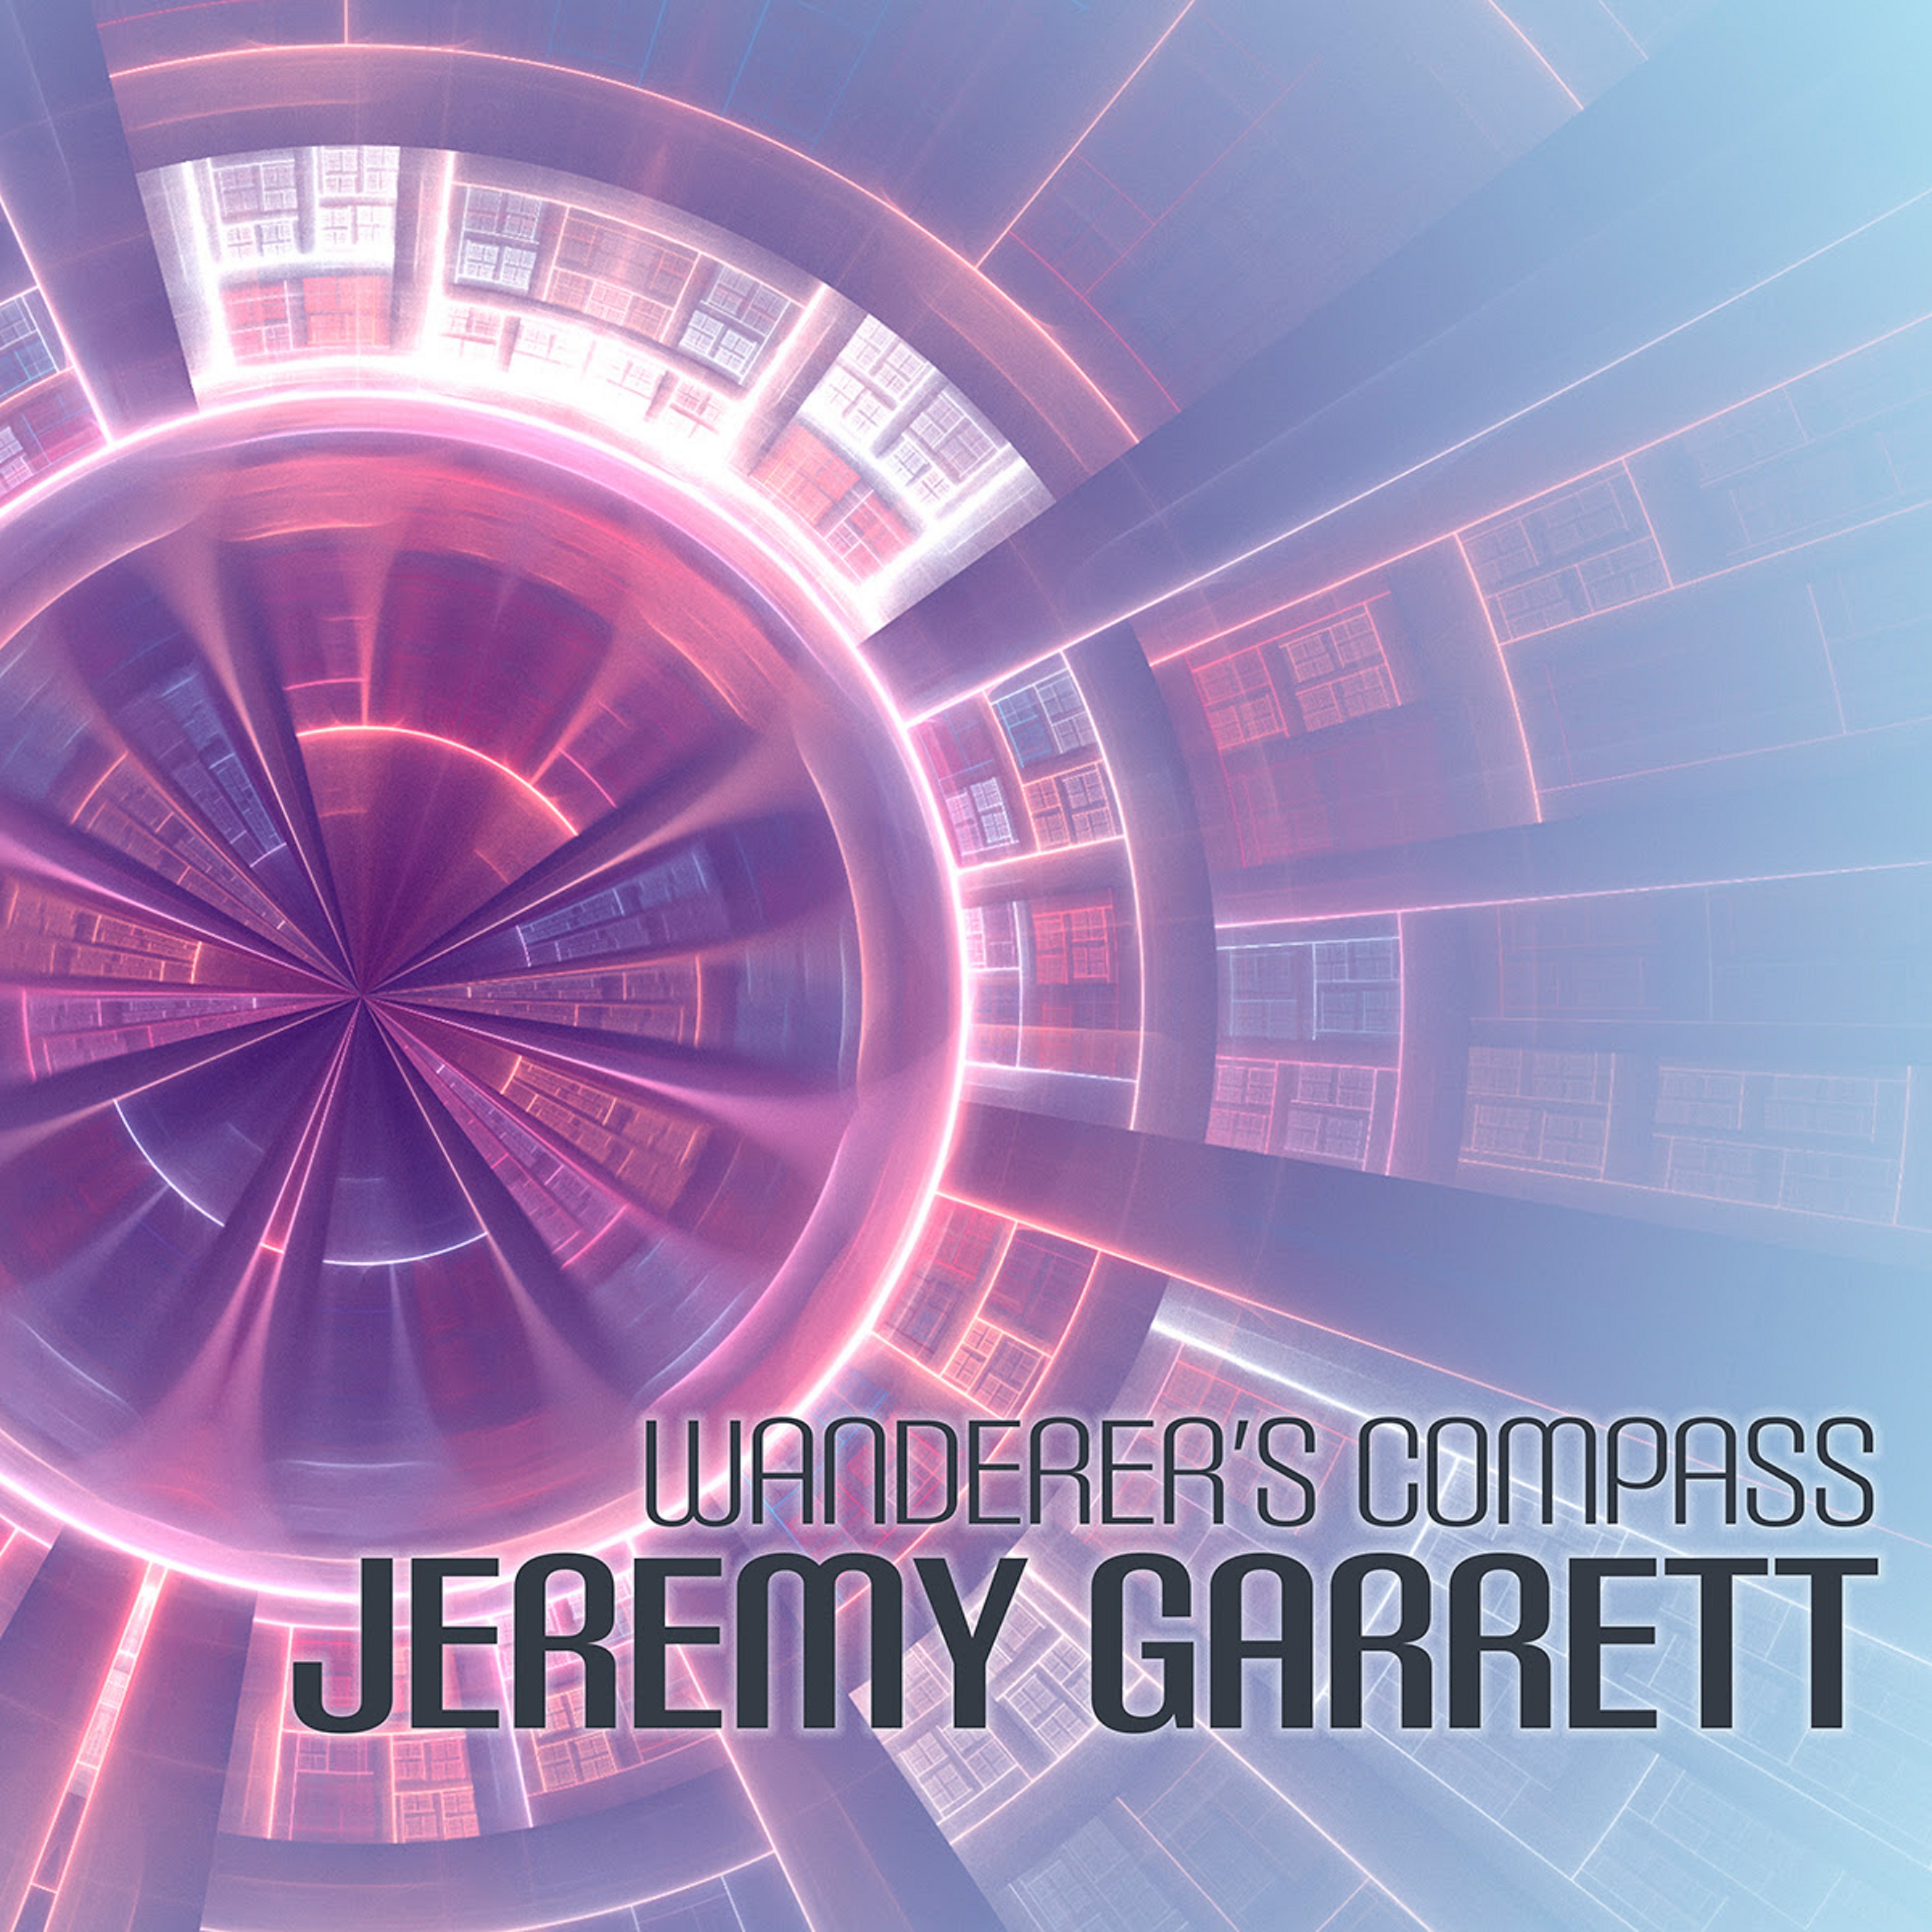 Jeremy Garrett follows a Wanderer's Compass on new album